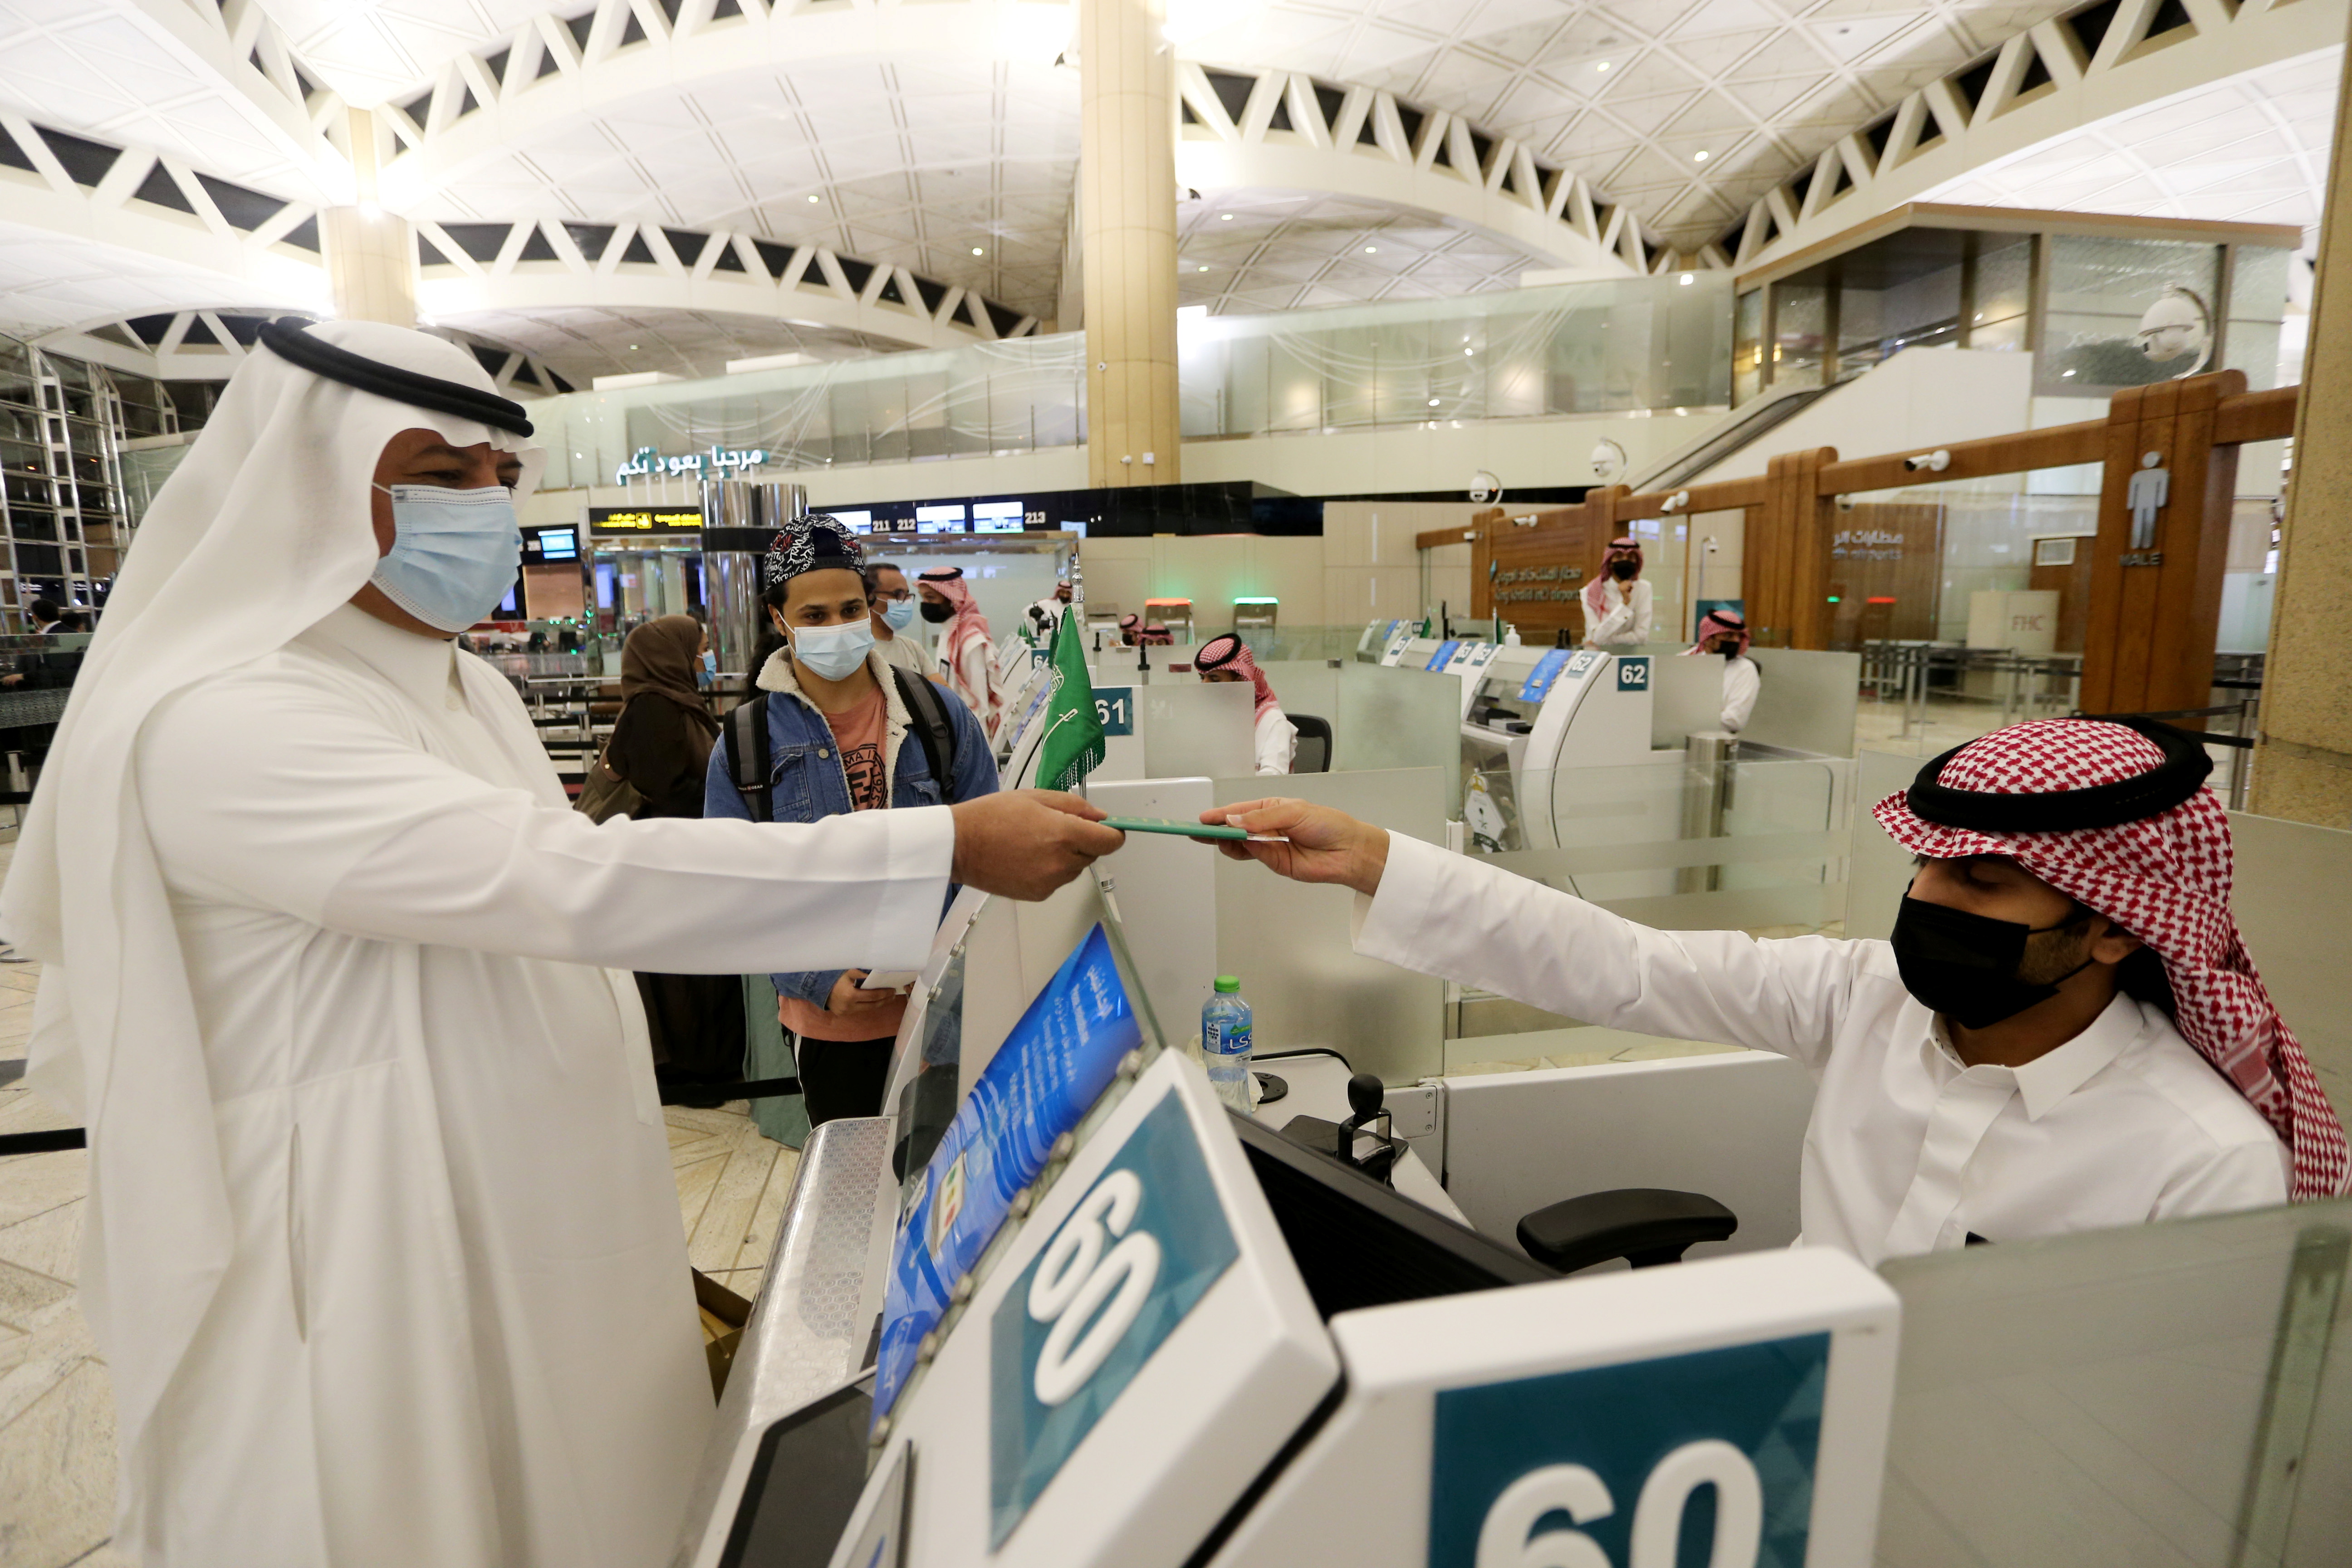 Un hombre saudí con una mascarilla obtiene su pasaporte de un oficial de inmigración saudí, en el Aeropuerto Internacional Rey Khalid, luego de que las autoridades sauditas levantaran la prohibición de viajar a sus ciudadanos después de catorce meses debido a las restricciones de la enfermedad por coronavirus (COVID-19), en Riad. Arabia Saudita
REUTERS/Ahmed Yosri